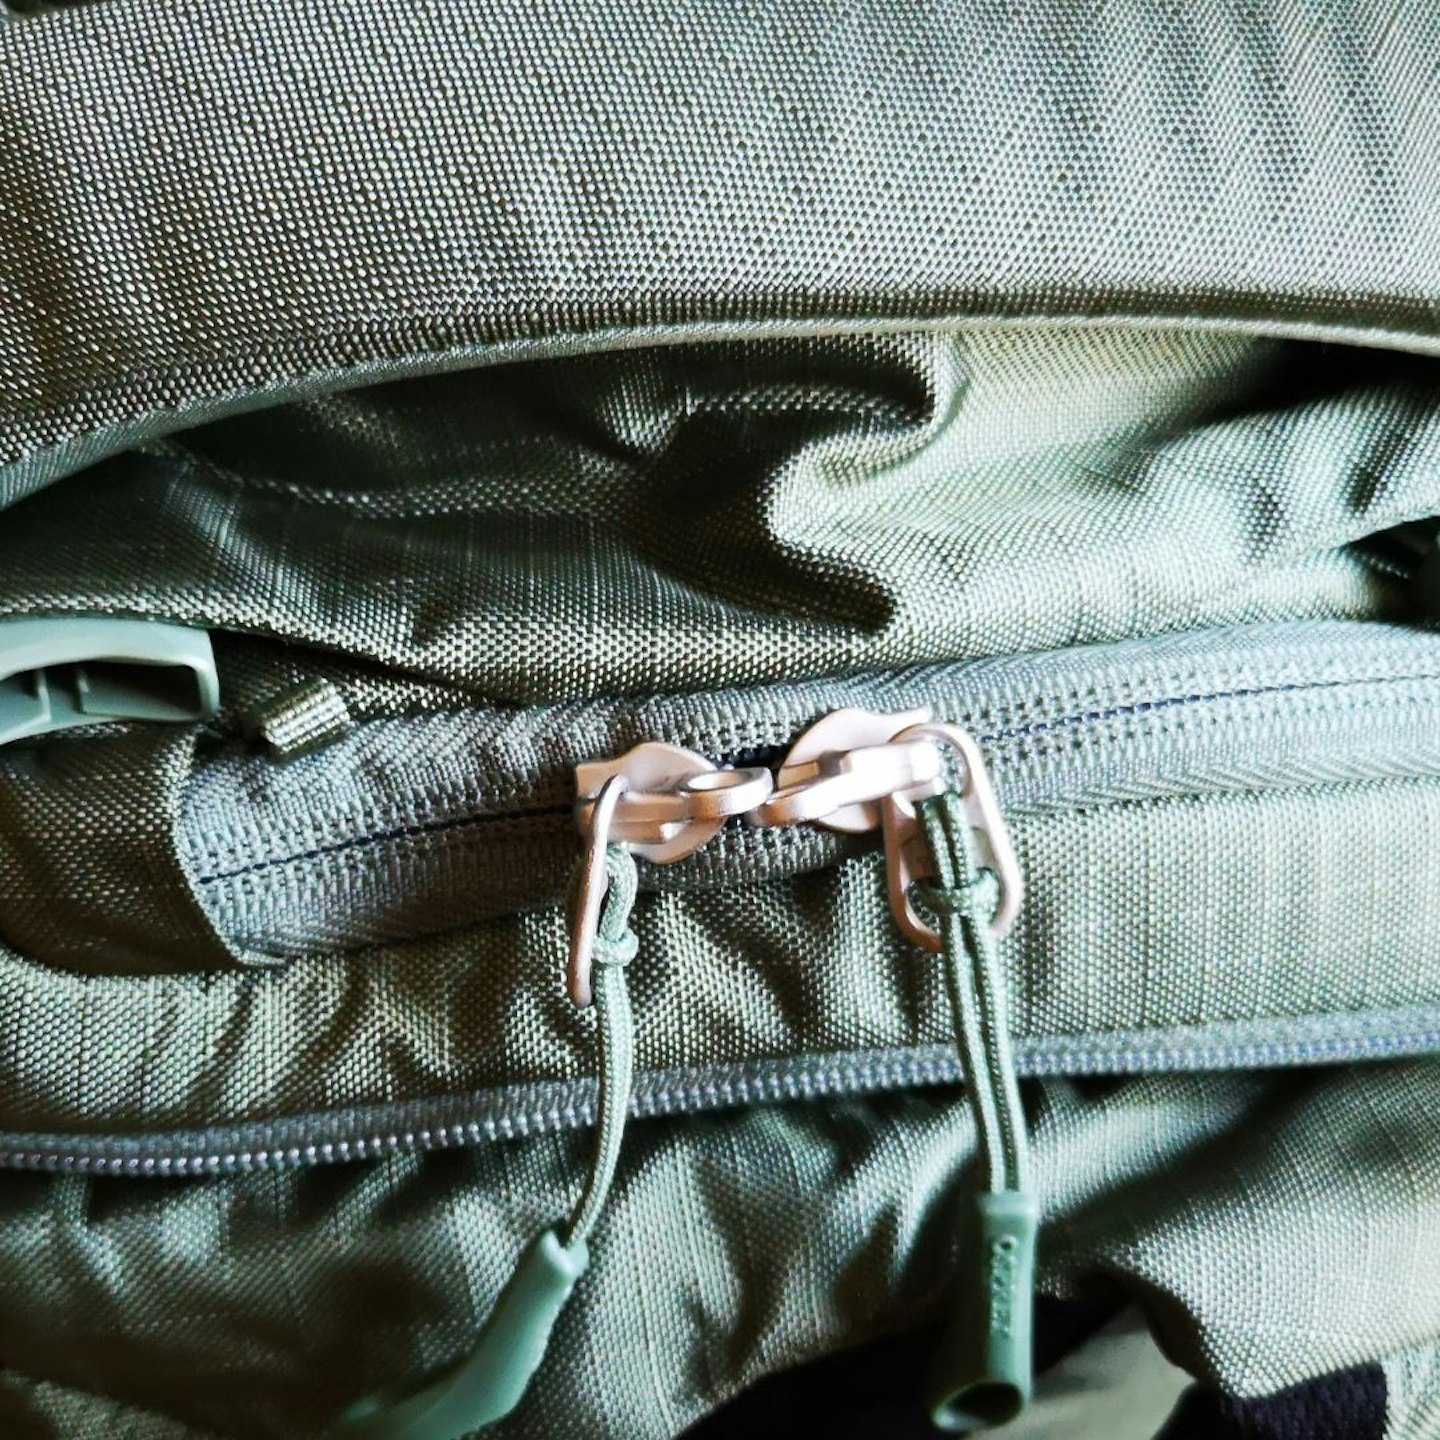 Osprey lockable zip